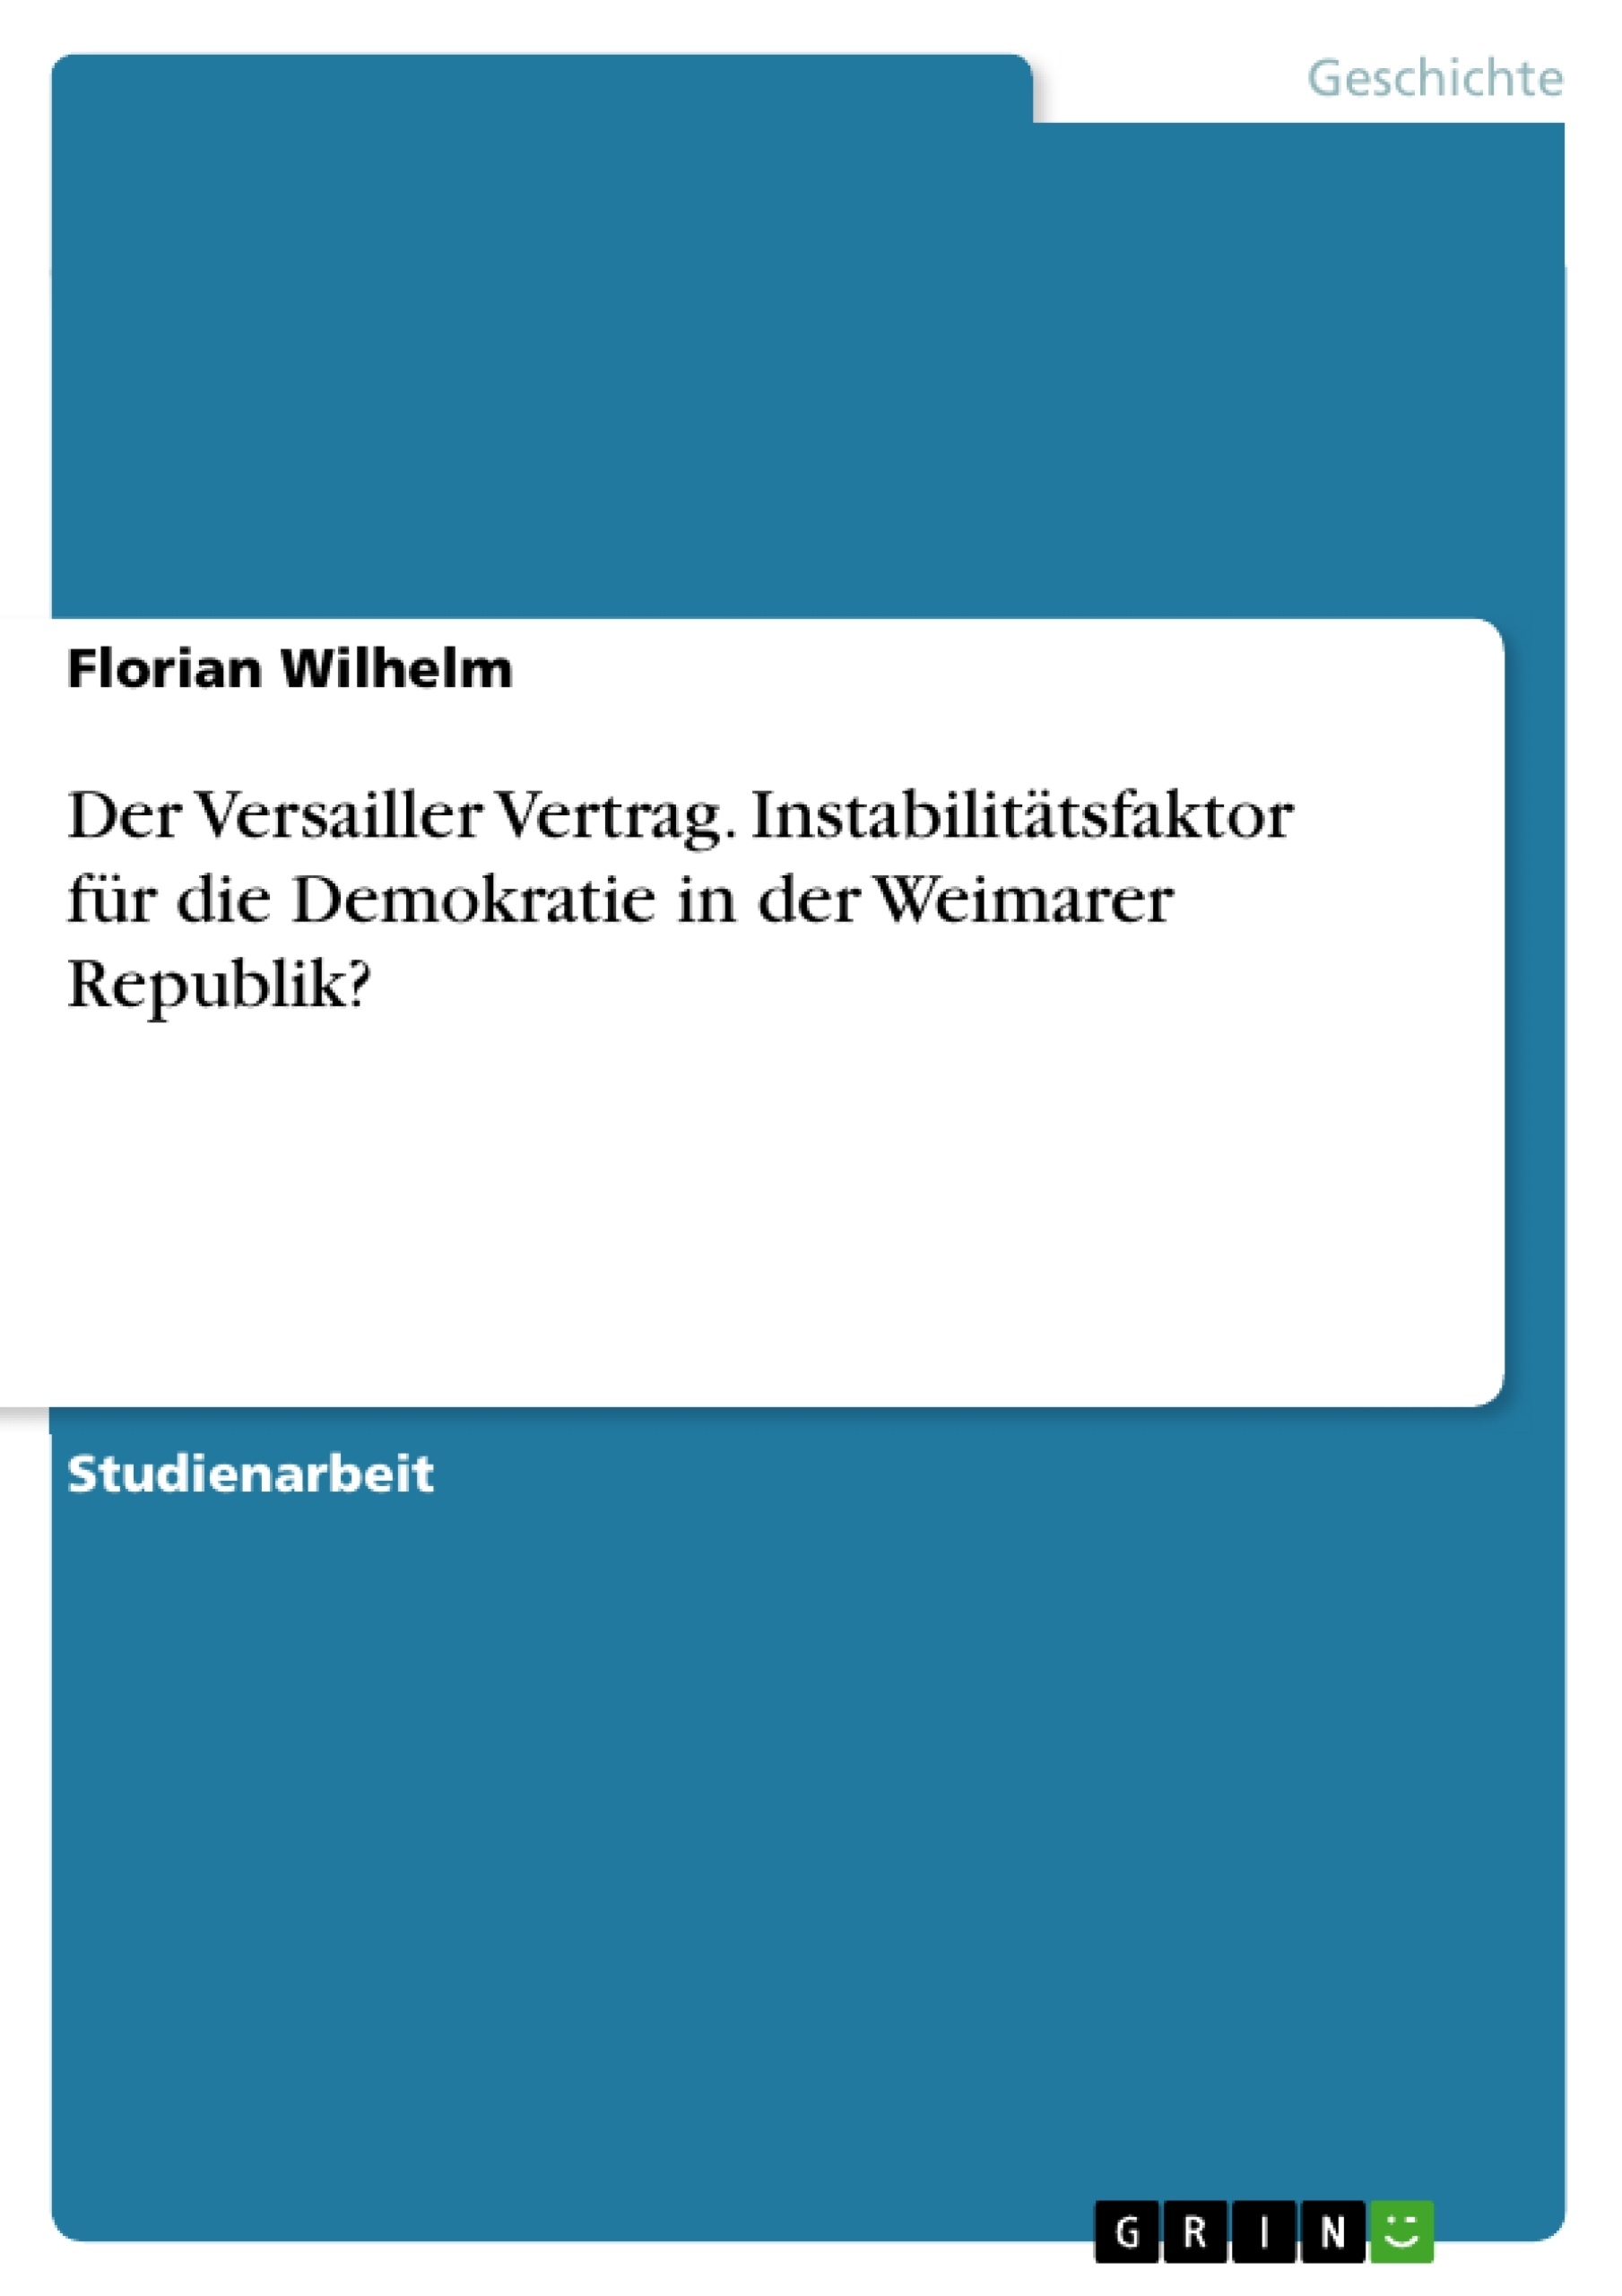 Title: Der Versailler Vertrag. Instabilitätsfaktor für die Demokratie in der Weimarer Republik?